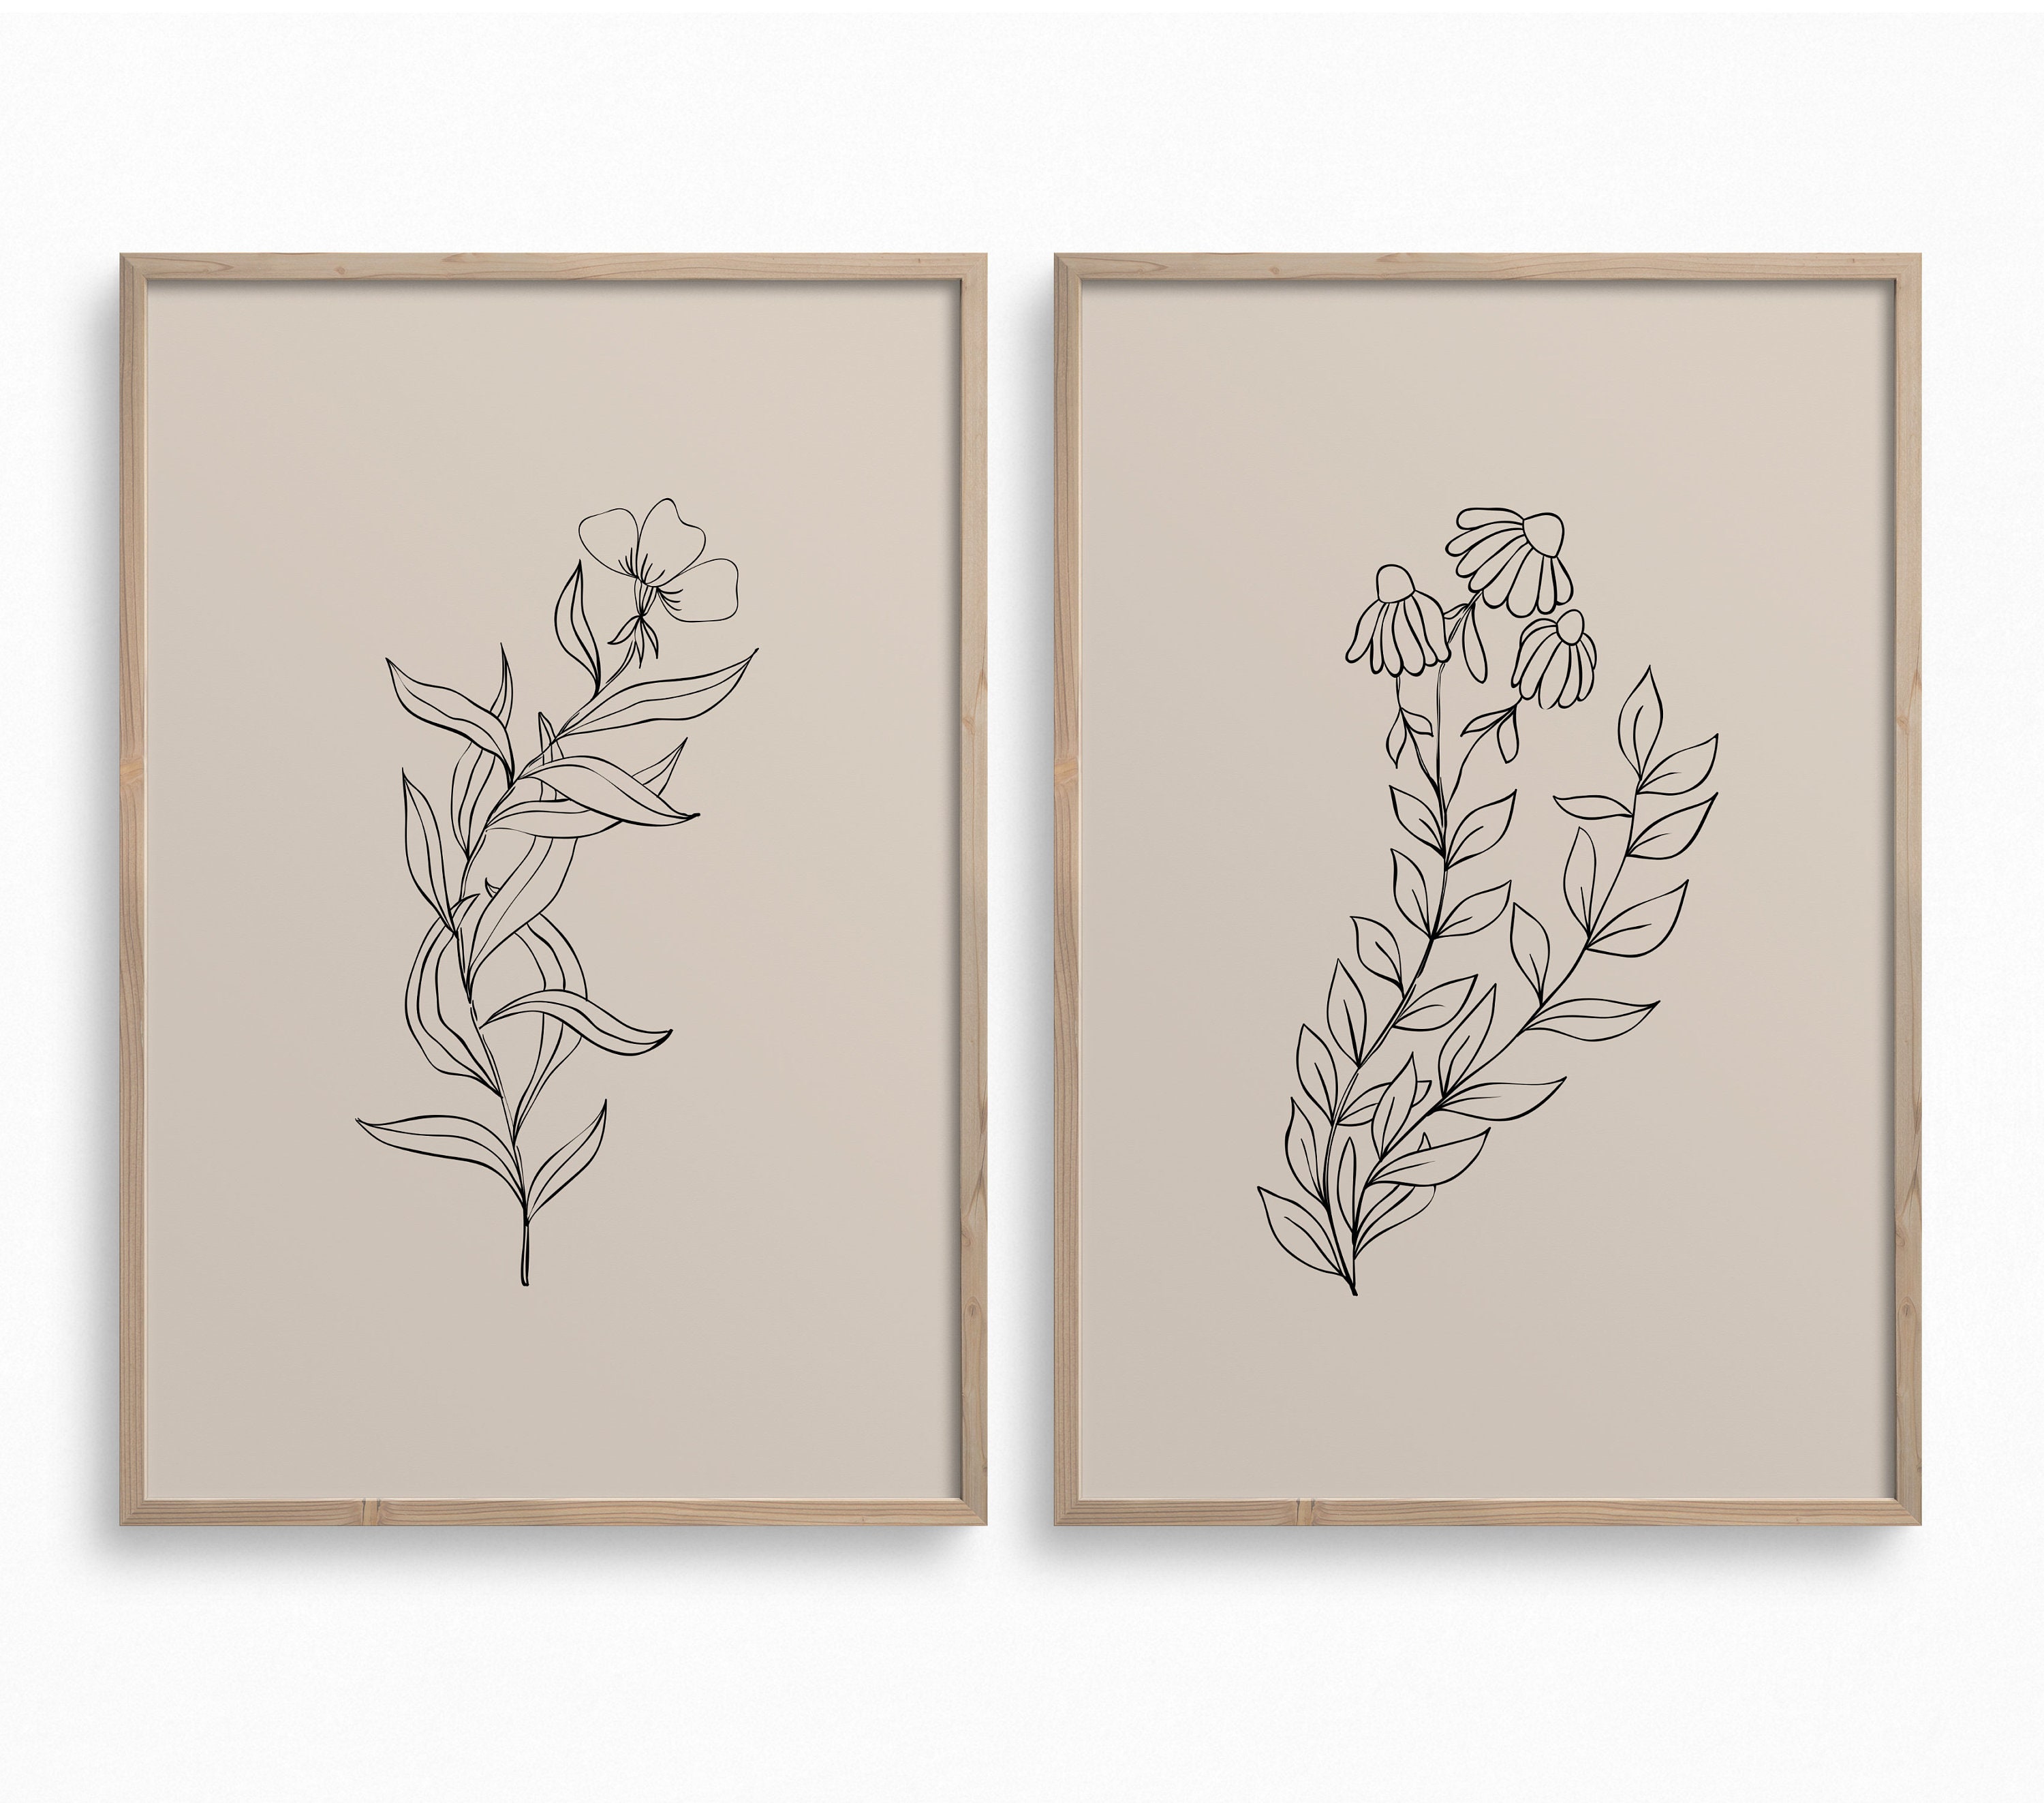 Minimalist Botanical Line ArtSet of 2 Downloadable Wild | Etsy